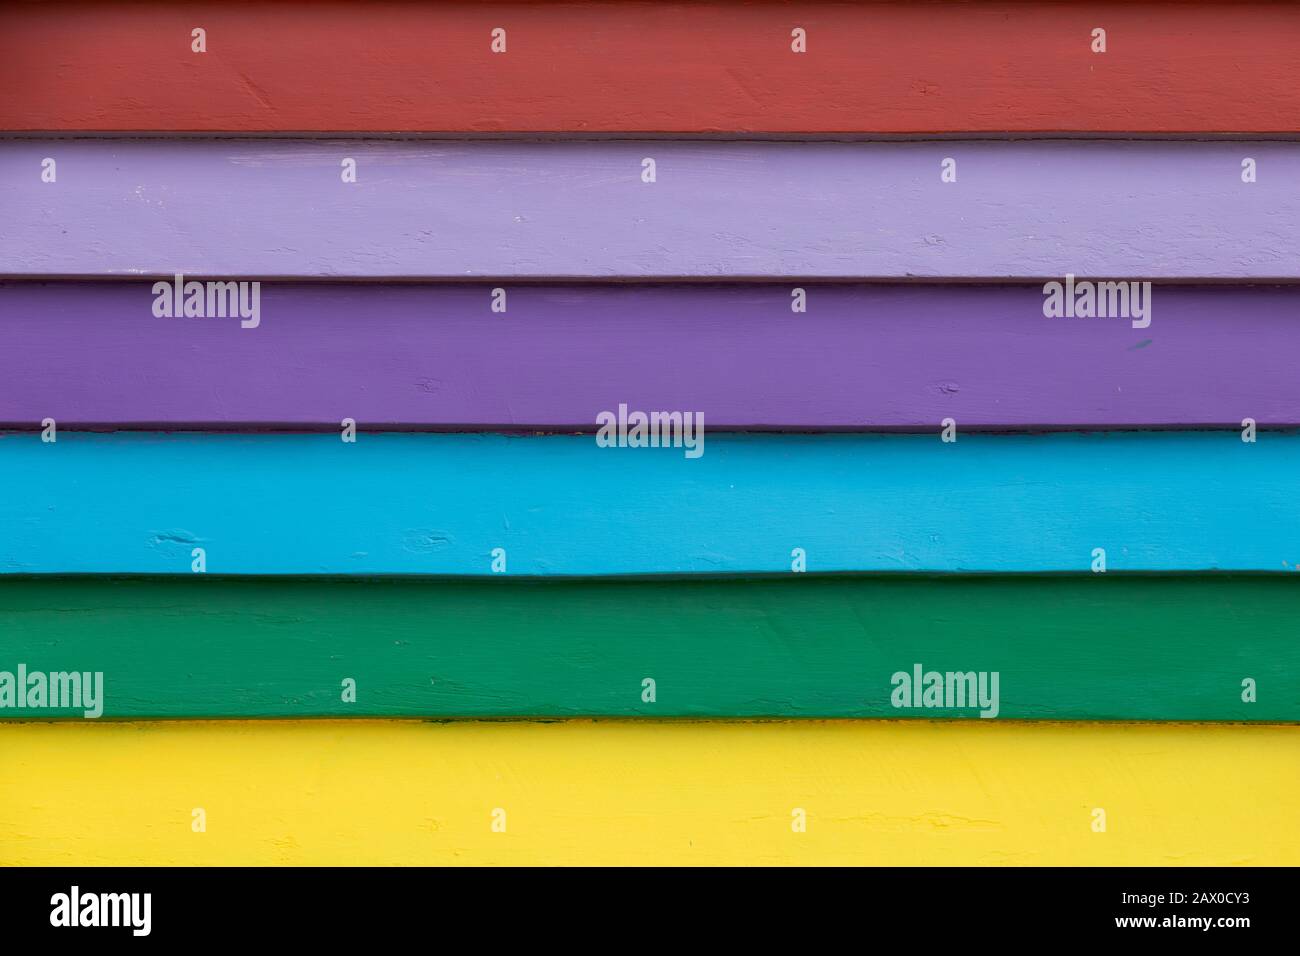 las tablas multicolores del clima del arco iris cierran el fondo de la textura Foto de stock